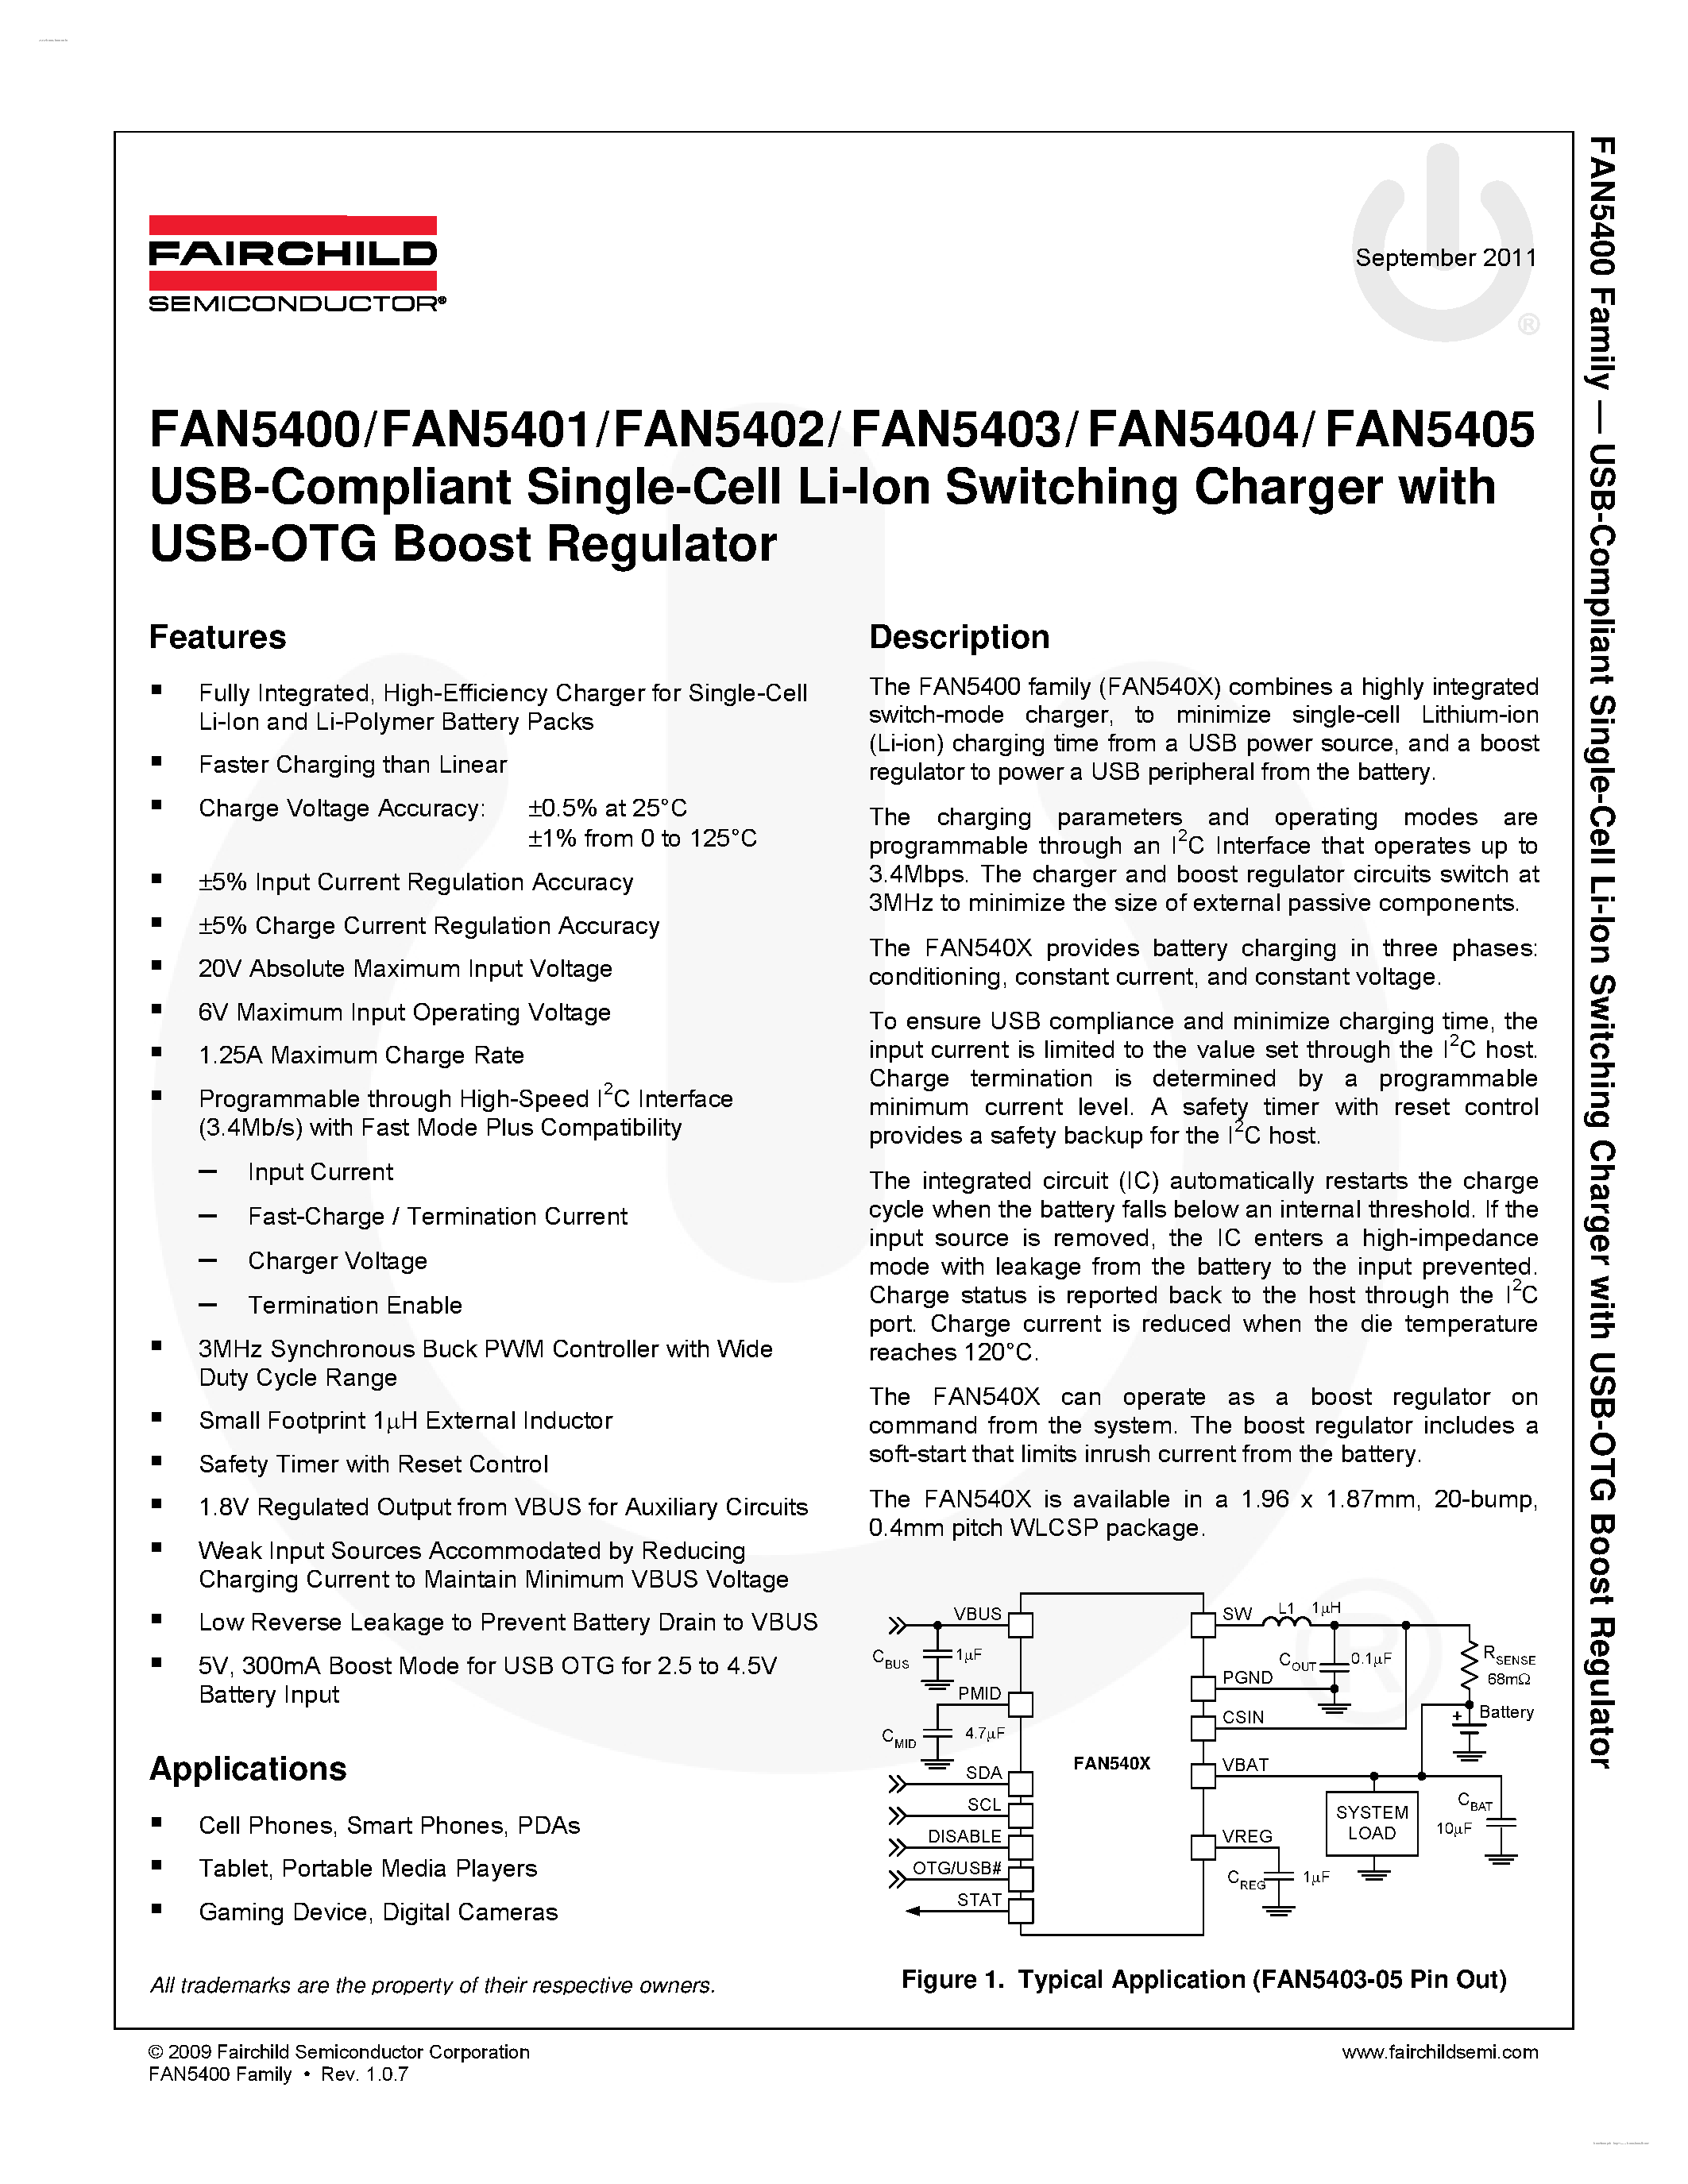 Datasheet FAN5400 - (FAN5401 - FAN5405) USB-Compliant Single-Cell Li-Ion Switching Charger page 1